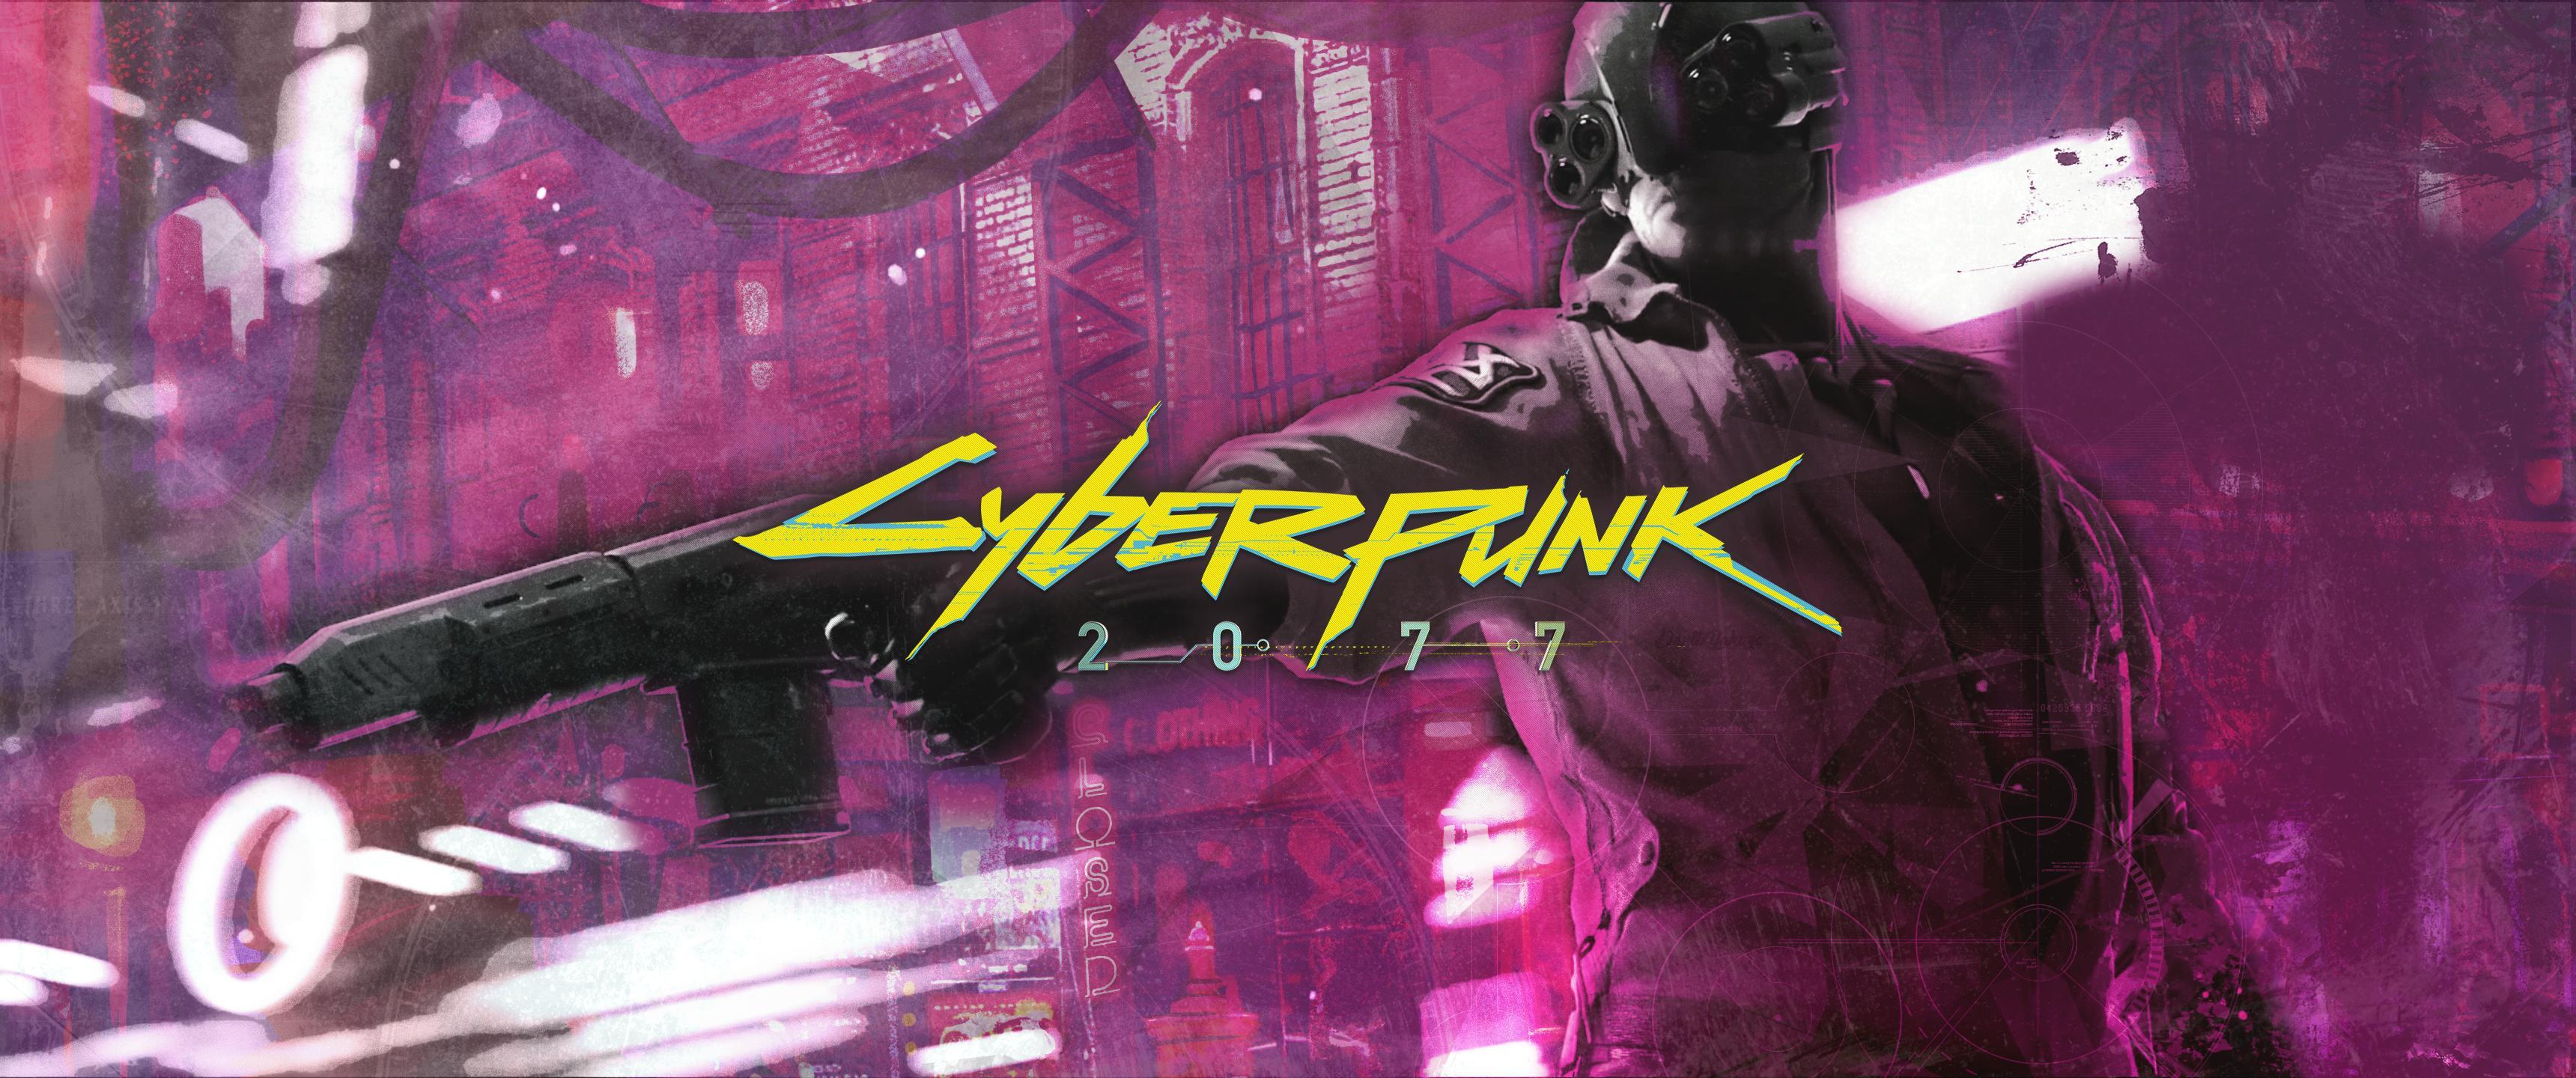 Cyberpunk 2077 [3440x1440]